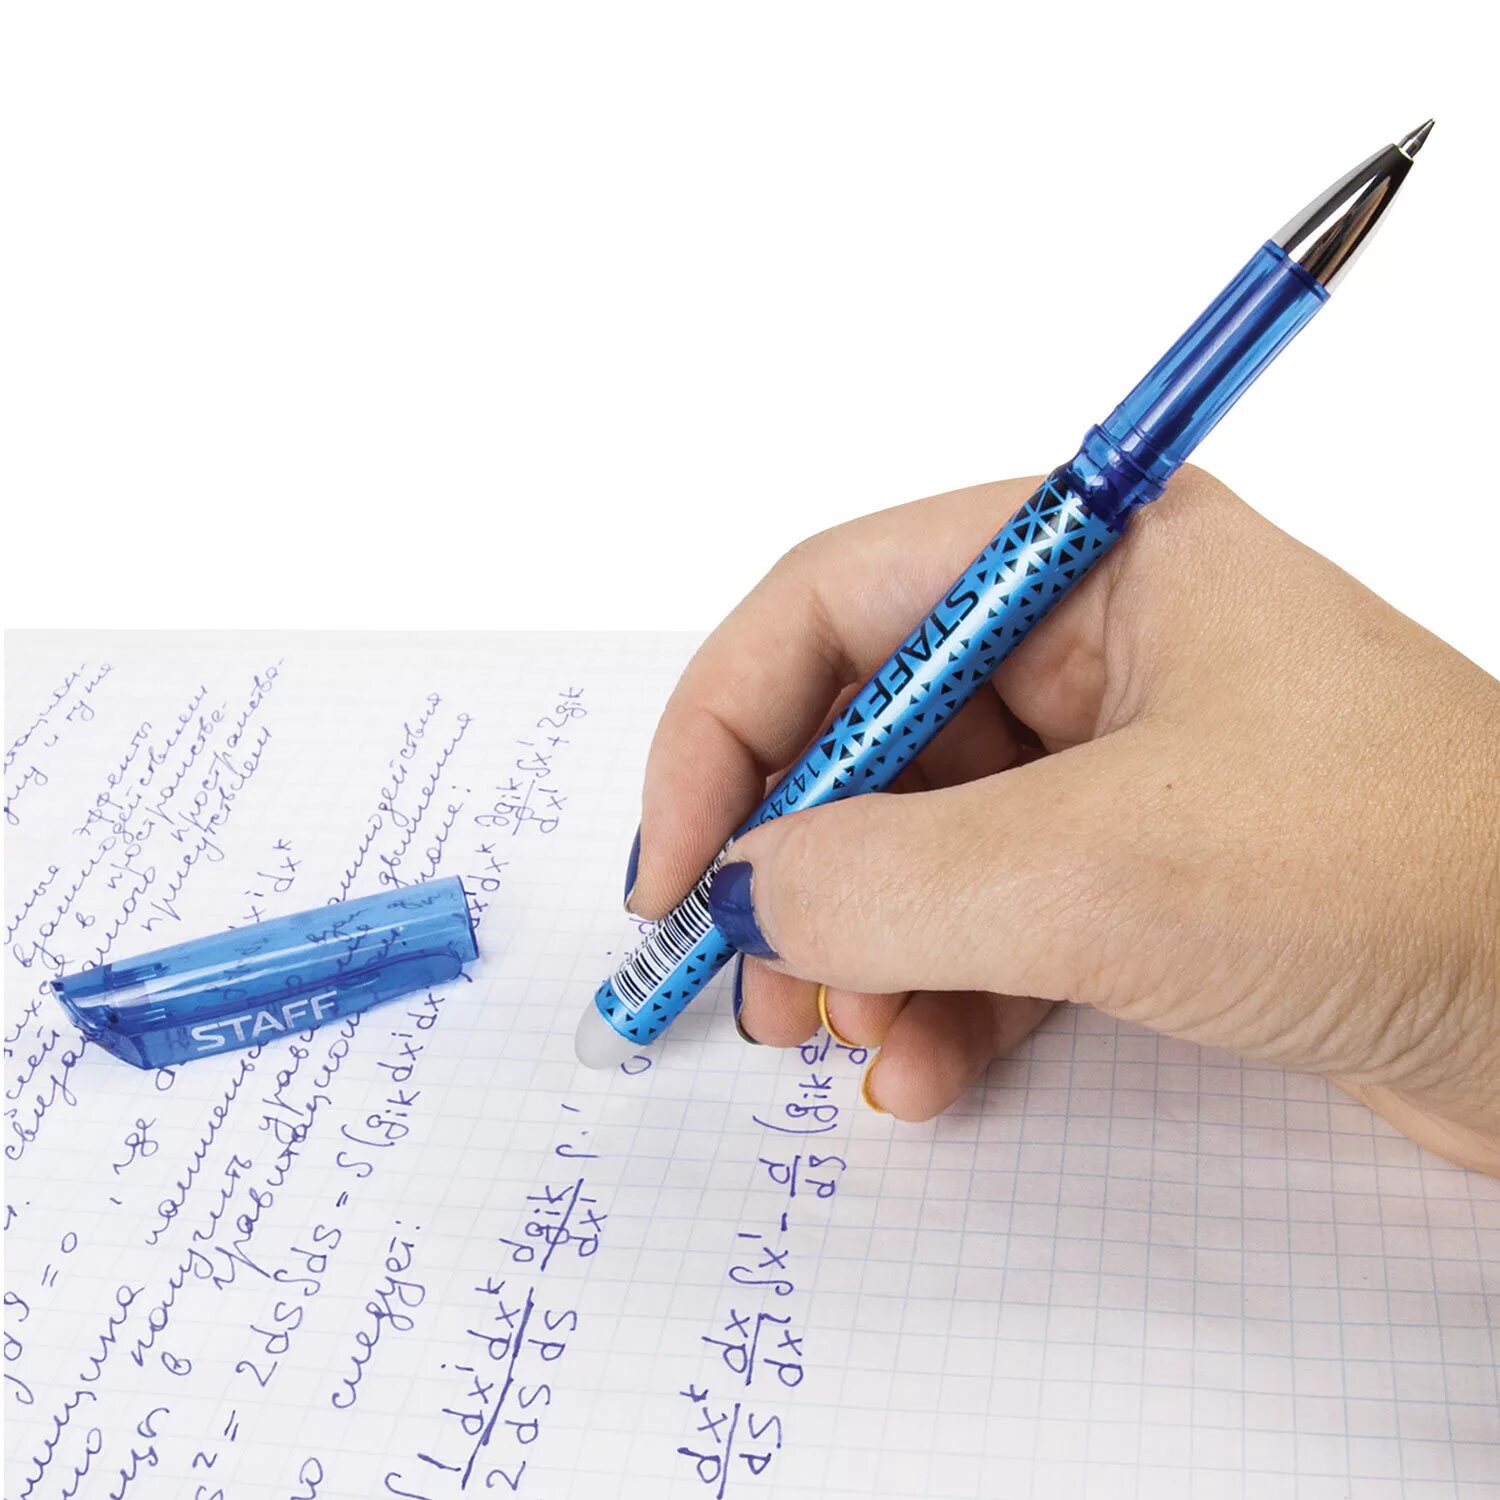 Ручка гелевая staff. Ручка гелевая со стираемыми синими чернилами "staff" 0.5мм. Ручка стираемая шариковая Erasable Zebra пиши-стирай синяя. Гелевая ручка со стёркой.